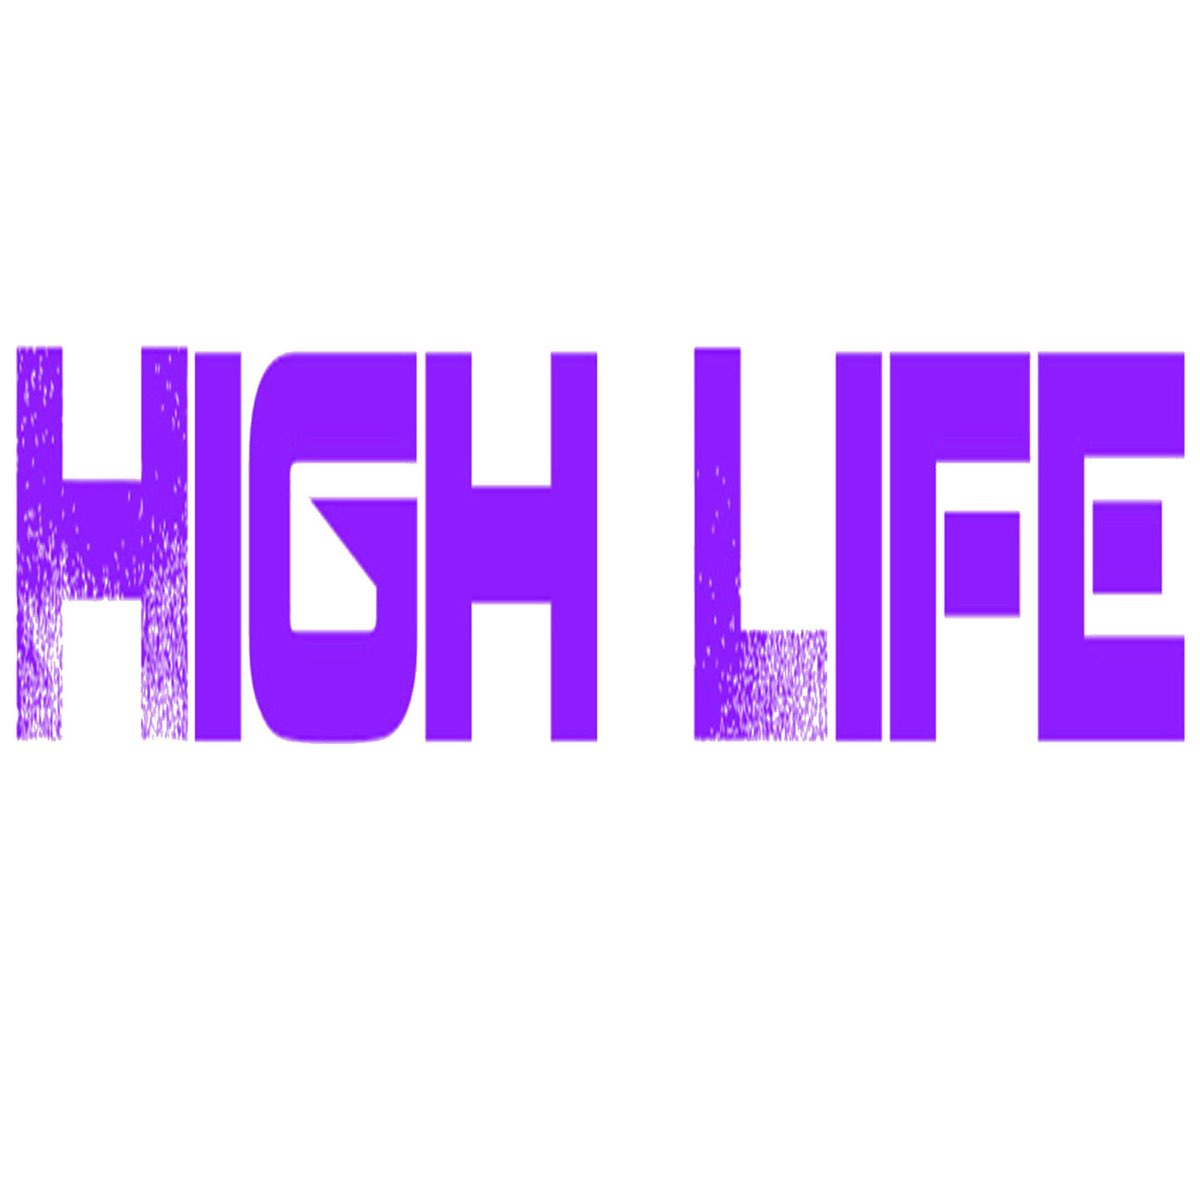 Hi is life. High Life. High on Life PNG.